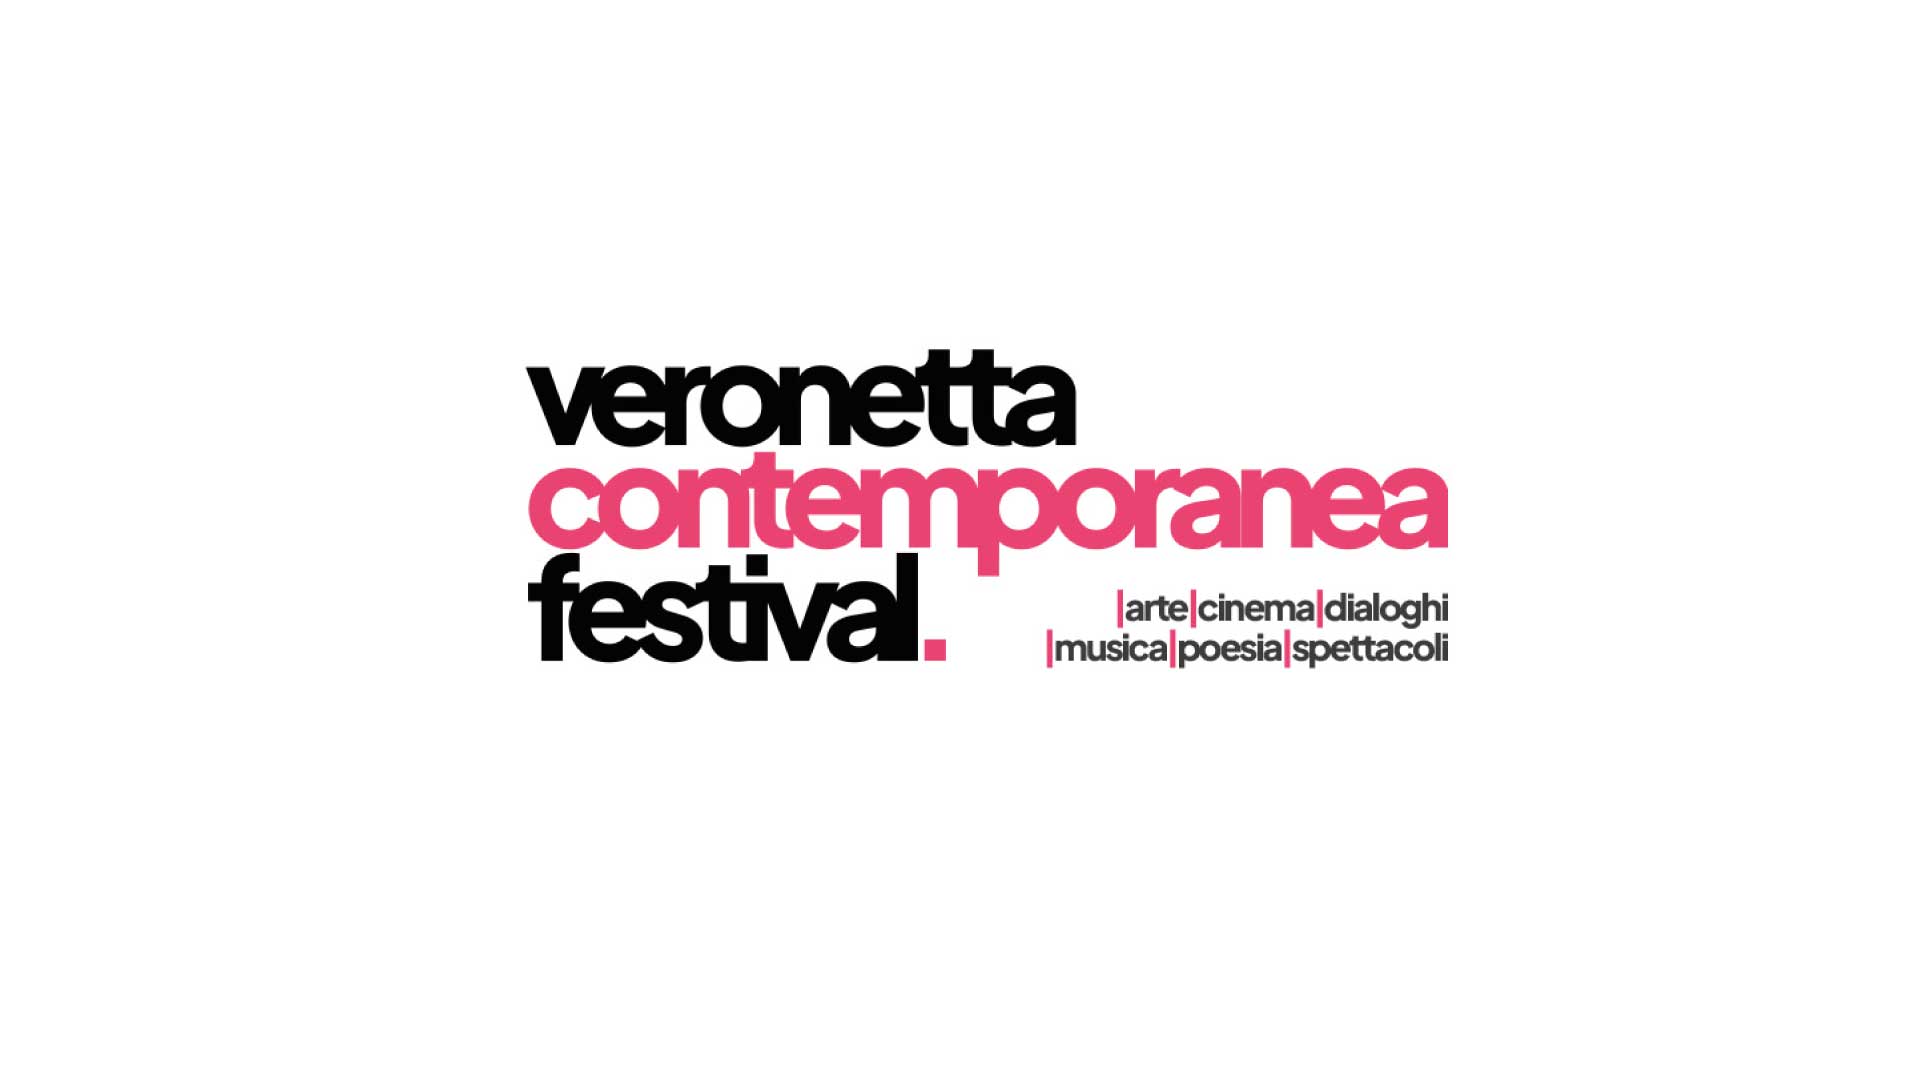 Veronetta Contemporanea Festival 